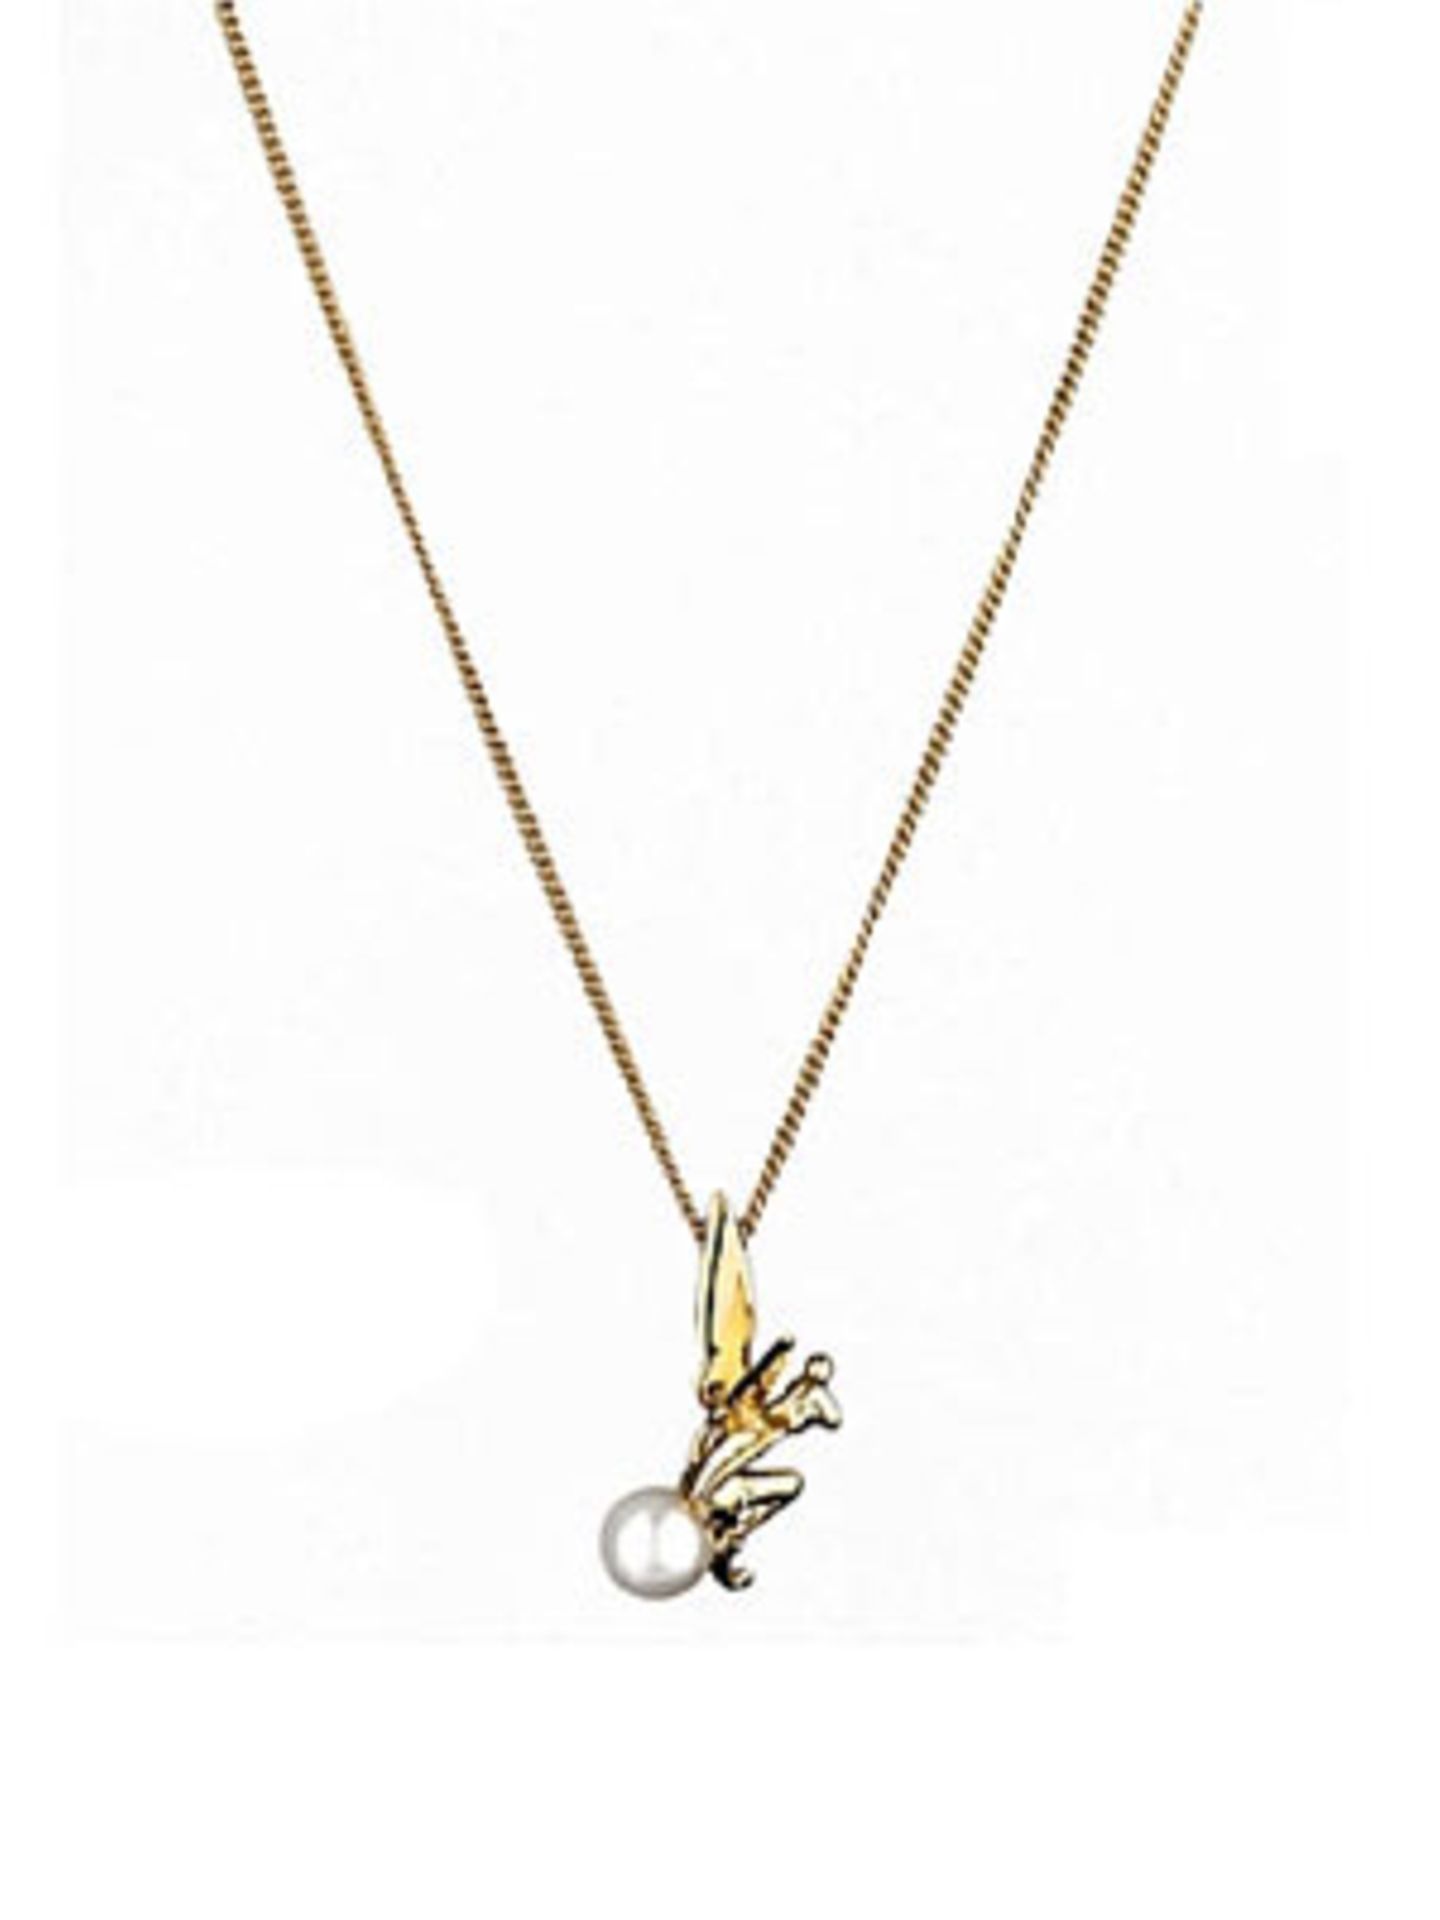 Goldene, auf einer kleinen Perle sitzenden Tinkerbell. Von Disney Couture, um 55 Euro. Über www.frontlineshop.com.